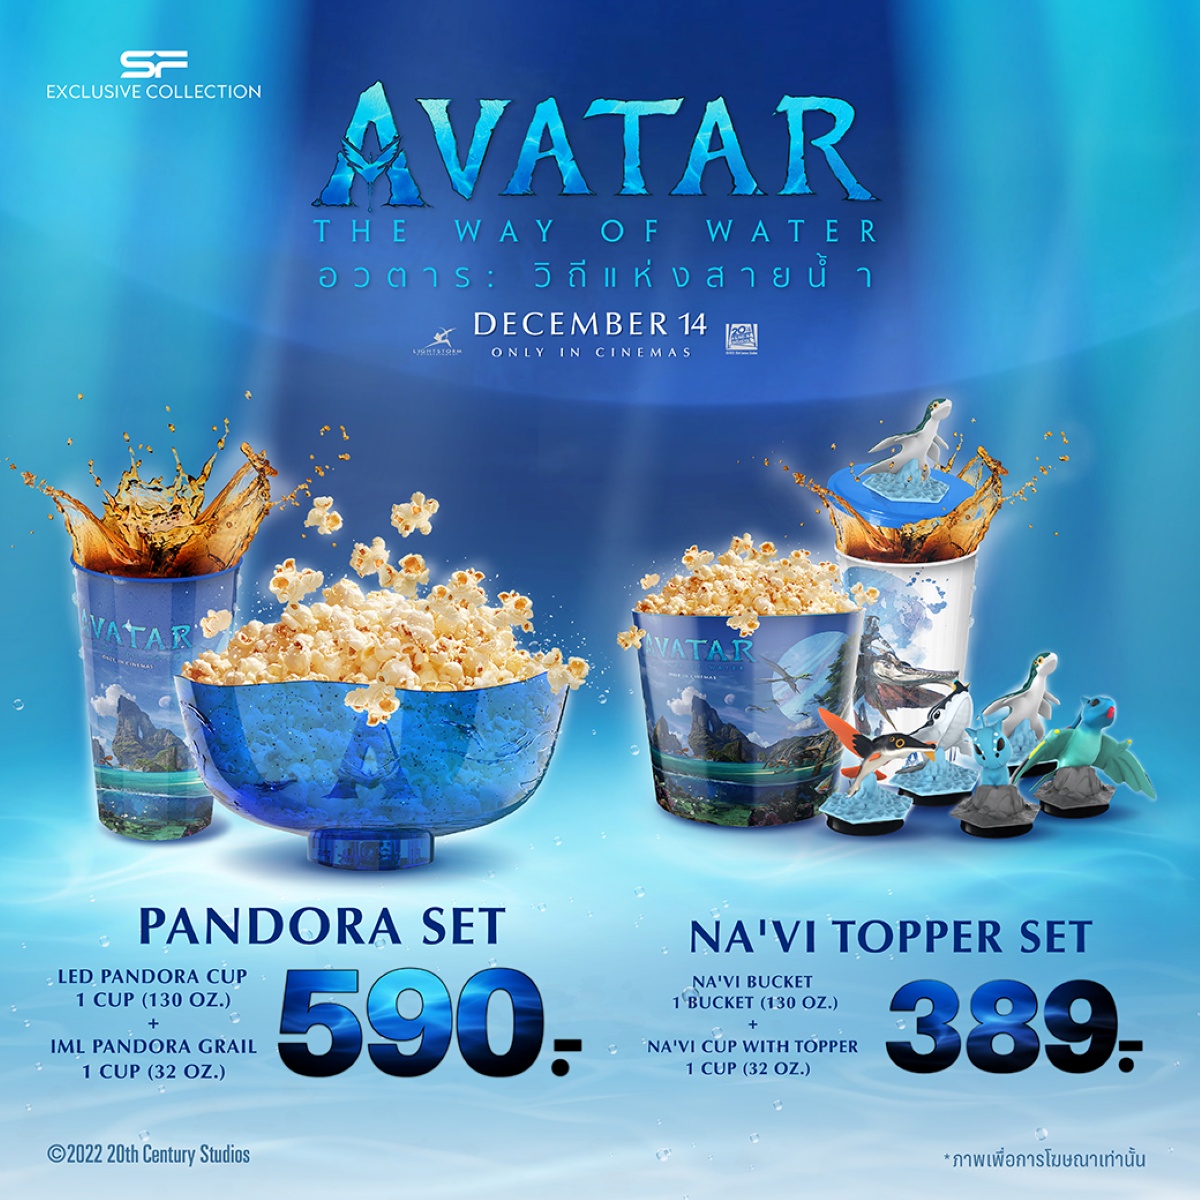 ต้อนรับการกลับมาของมหากาพย์ภาพยนตร์ฟอร์มยักษ์ Avatar : The Way of Water กับชุดคอมโบ เซท สุดเอ็กซ์คลูซีฟ AVATAR 2 COMBO SET ที่ เอส เอฟ เท่านั้น!!